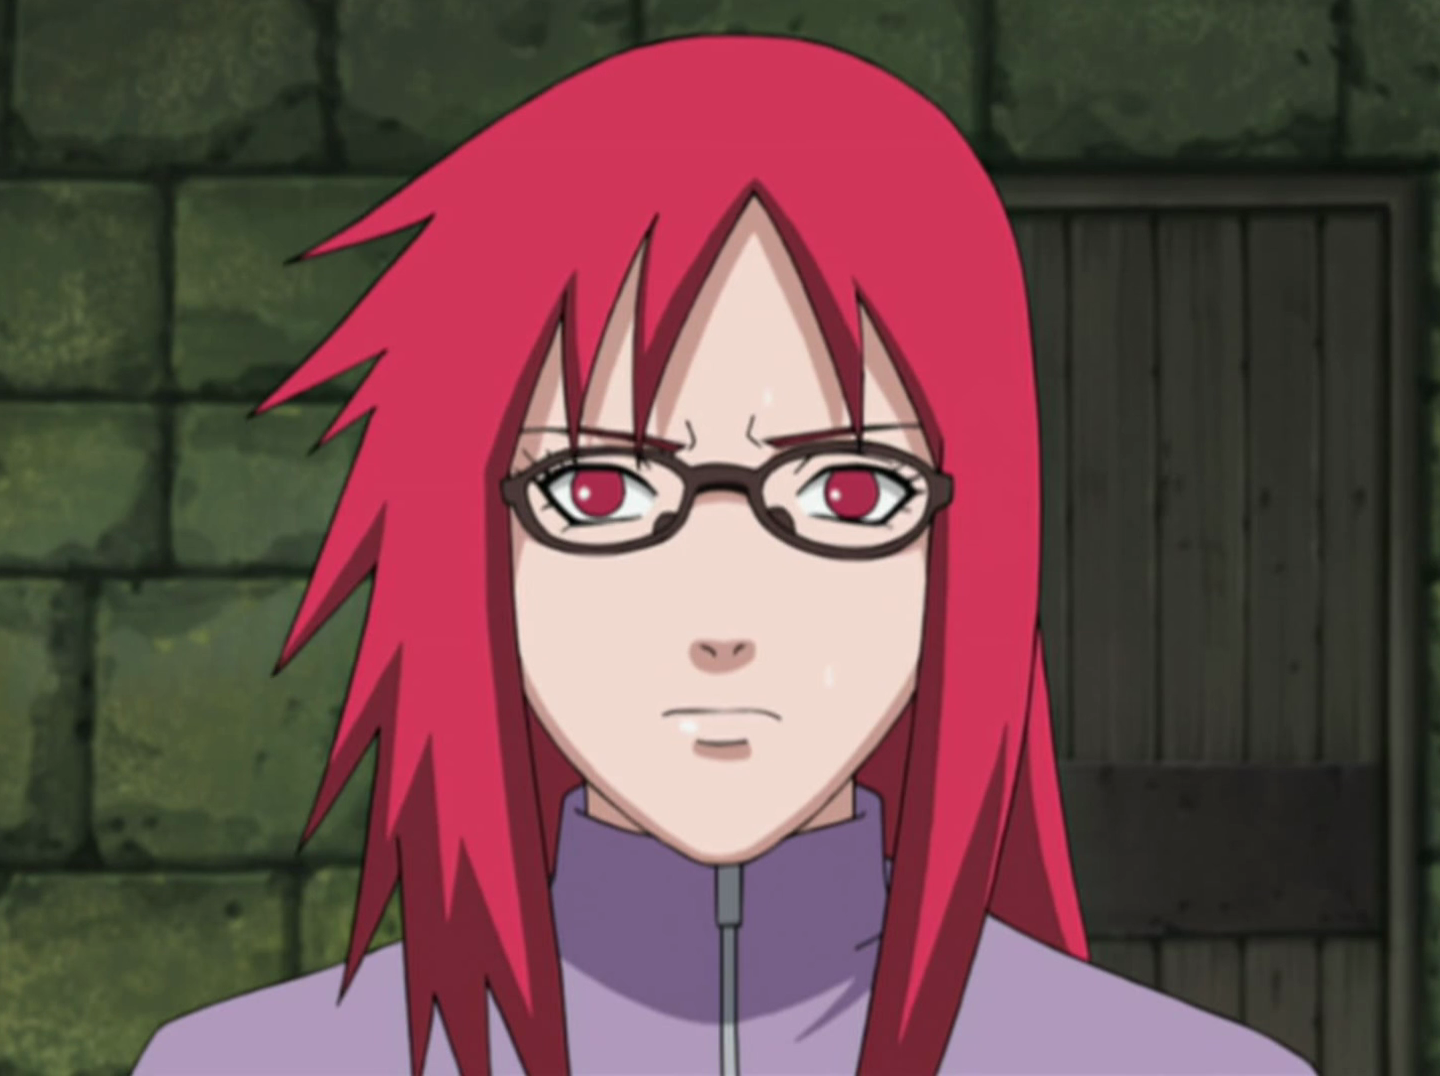 Does Sasuke ruin Naruto? - Gen. Discussion - Comic Vine